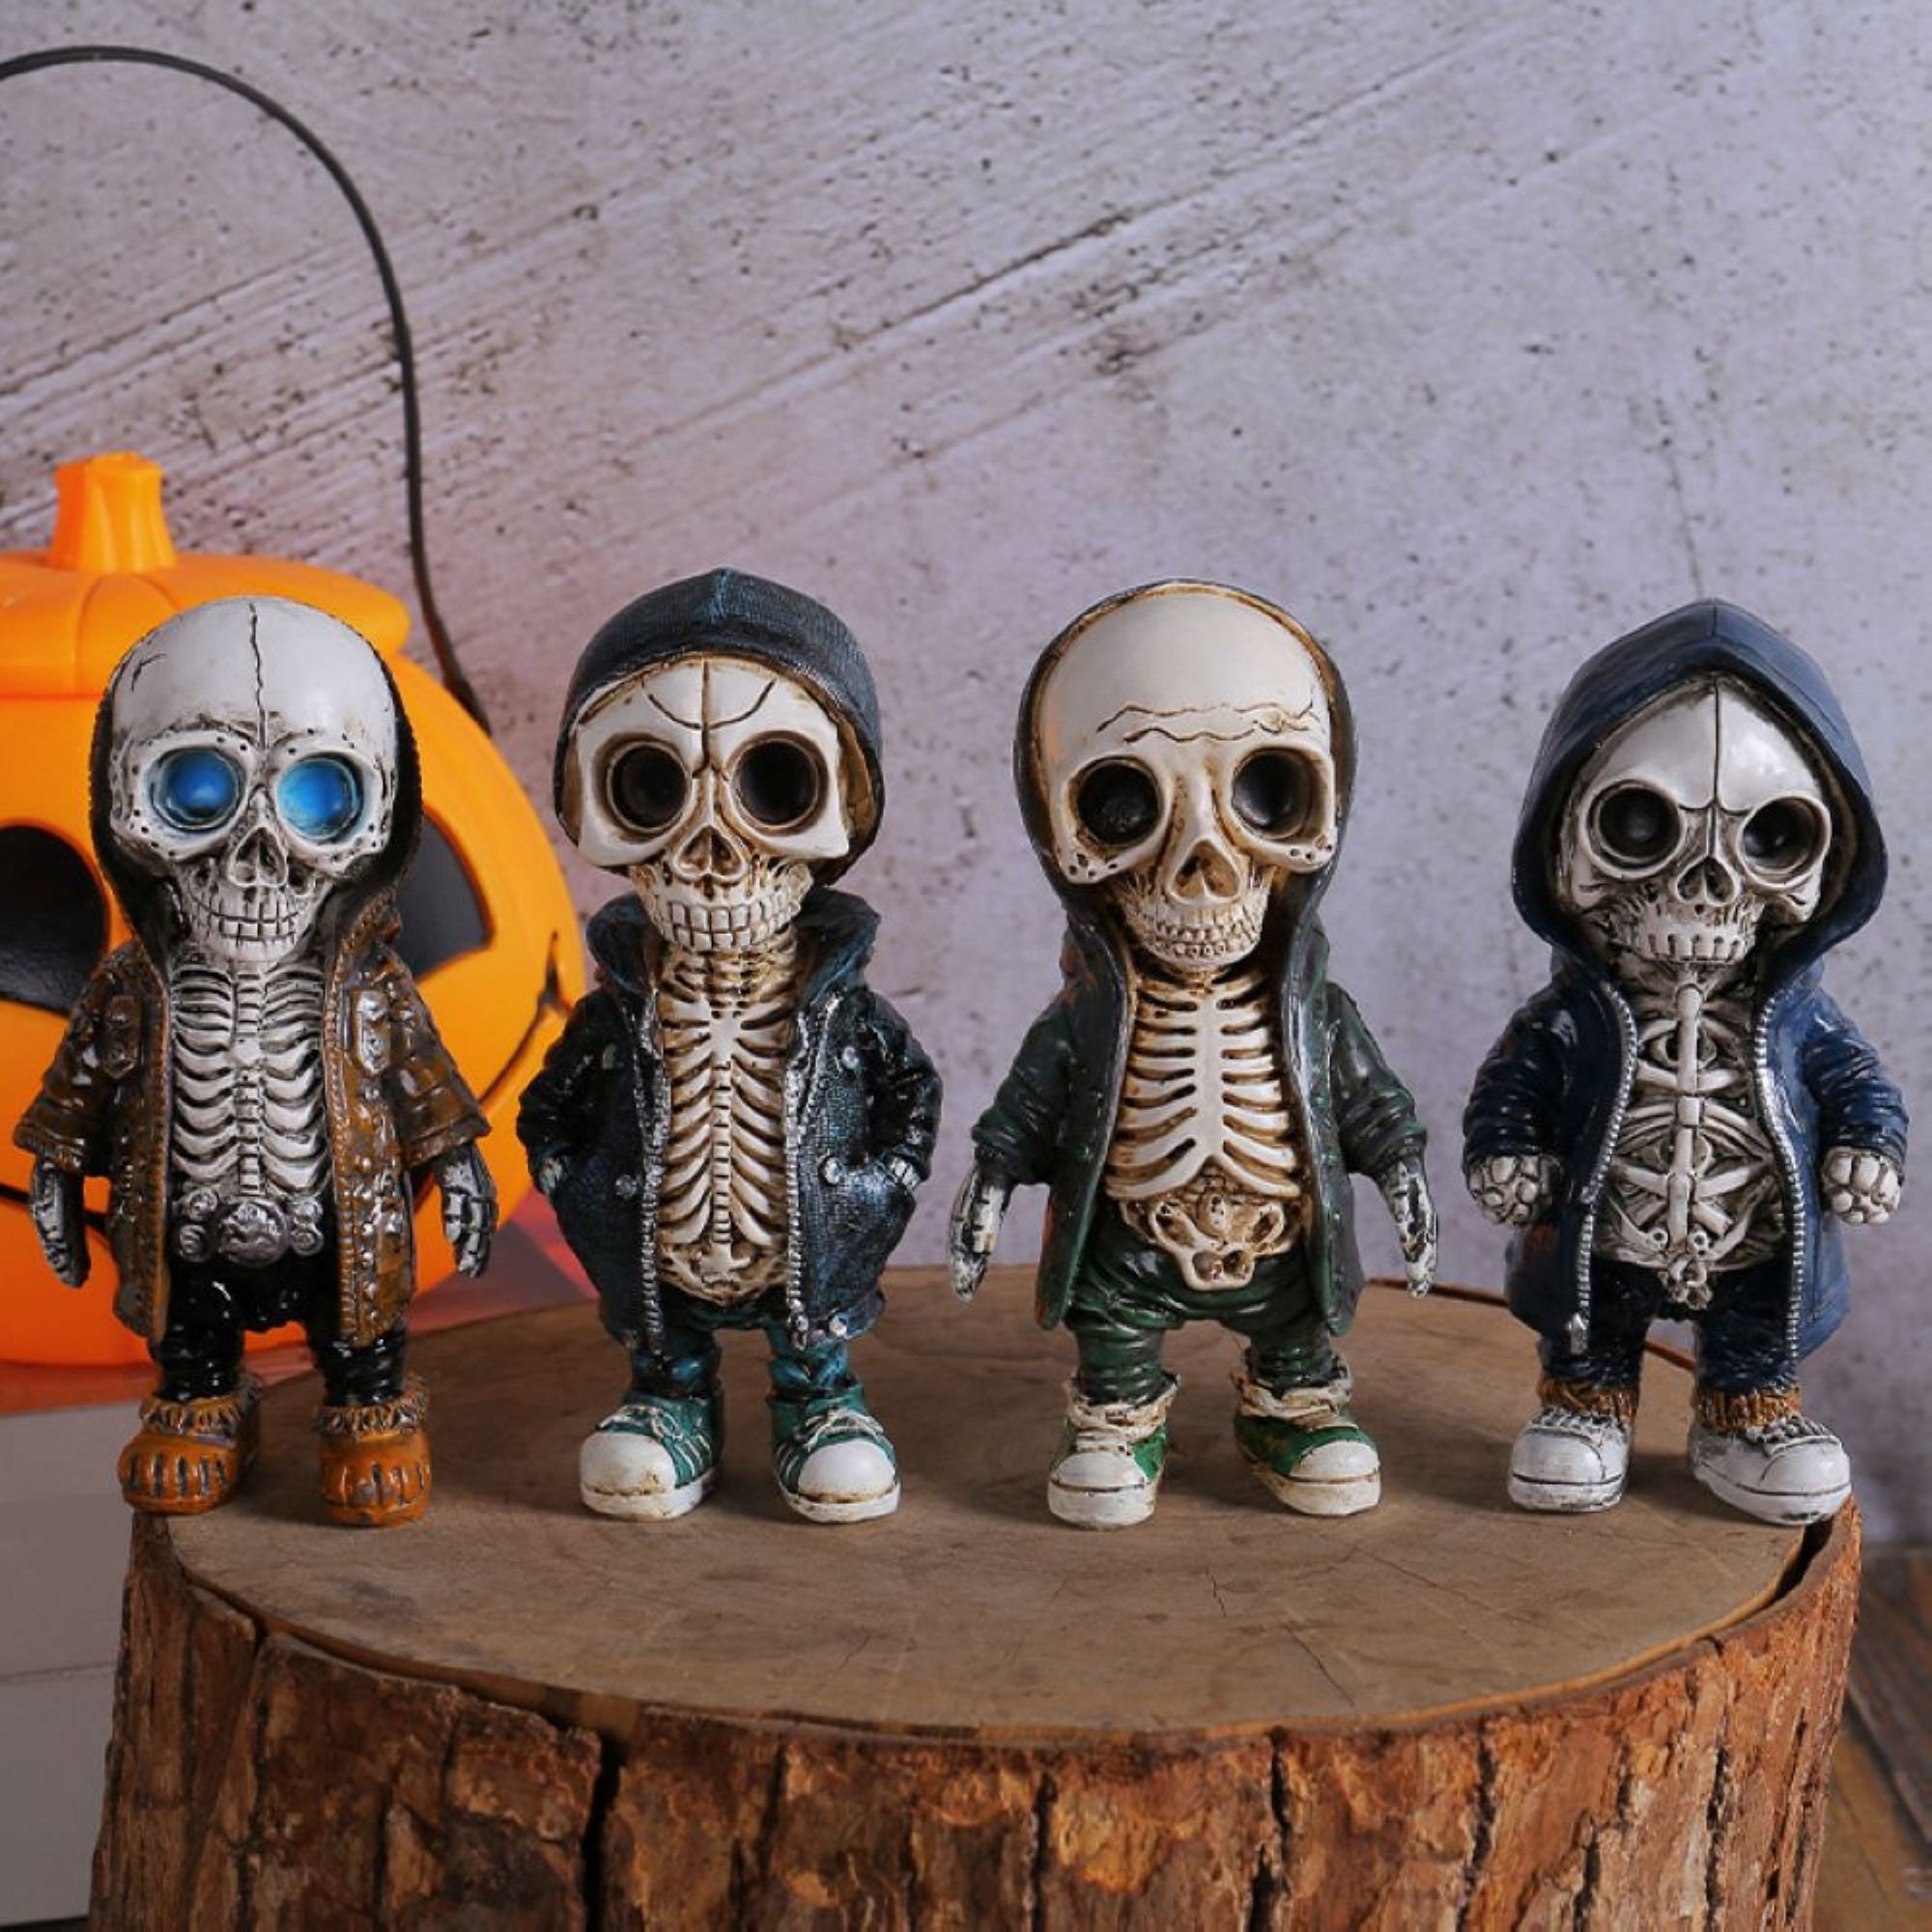 Resin Cool Skeleton Figures Halloween Skeleton Figurine Skull Horrible  Ornaments Car Instrument Panel Desk Decoration